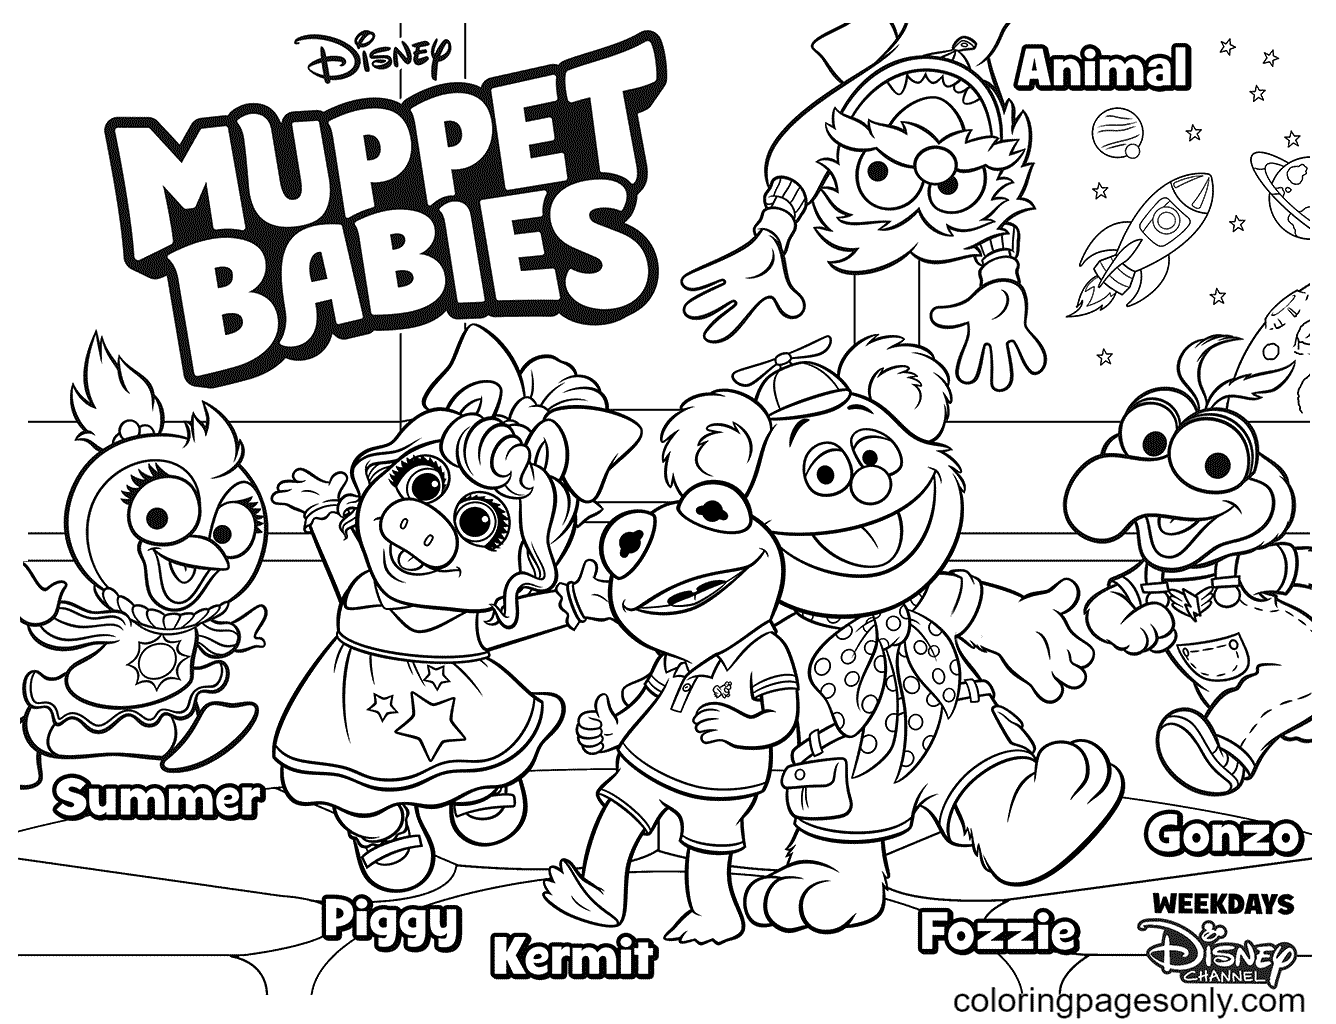 Disney Muppet Babies van Muppet Babies